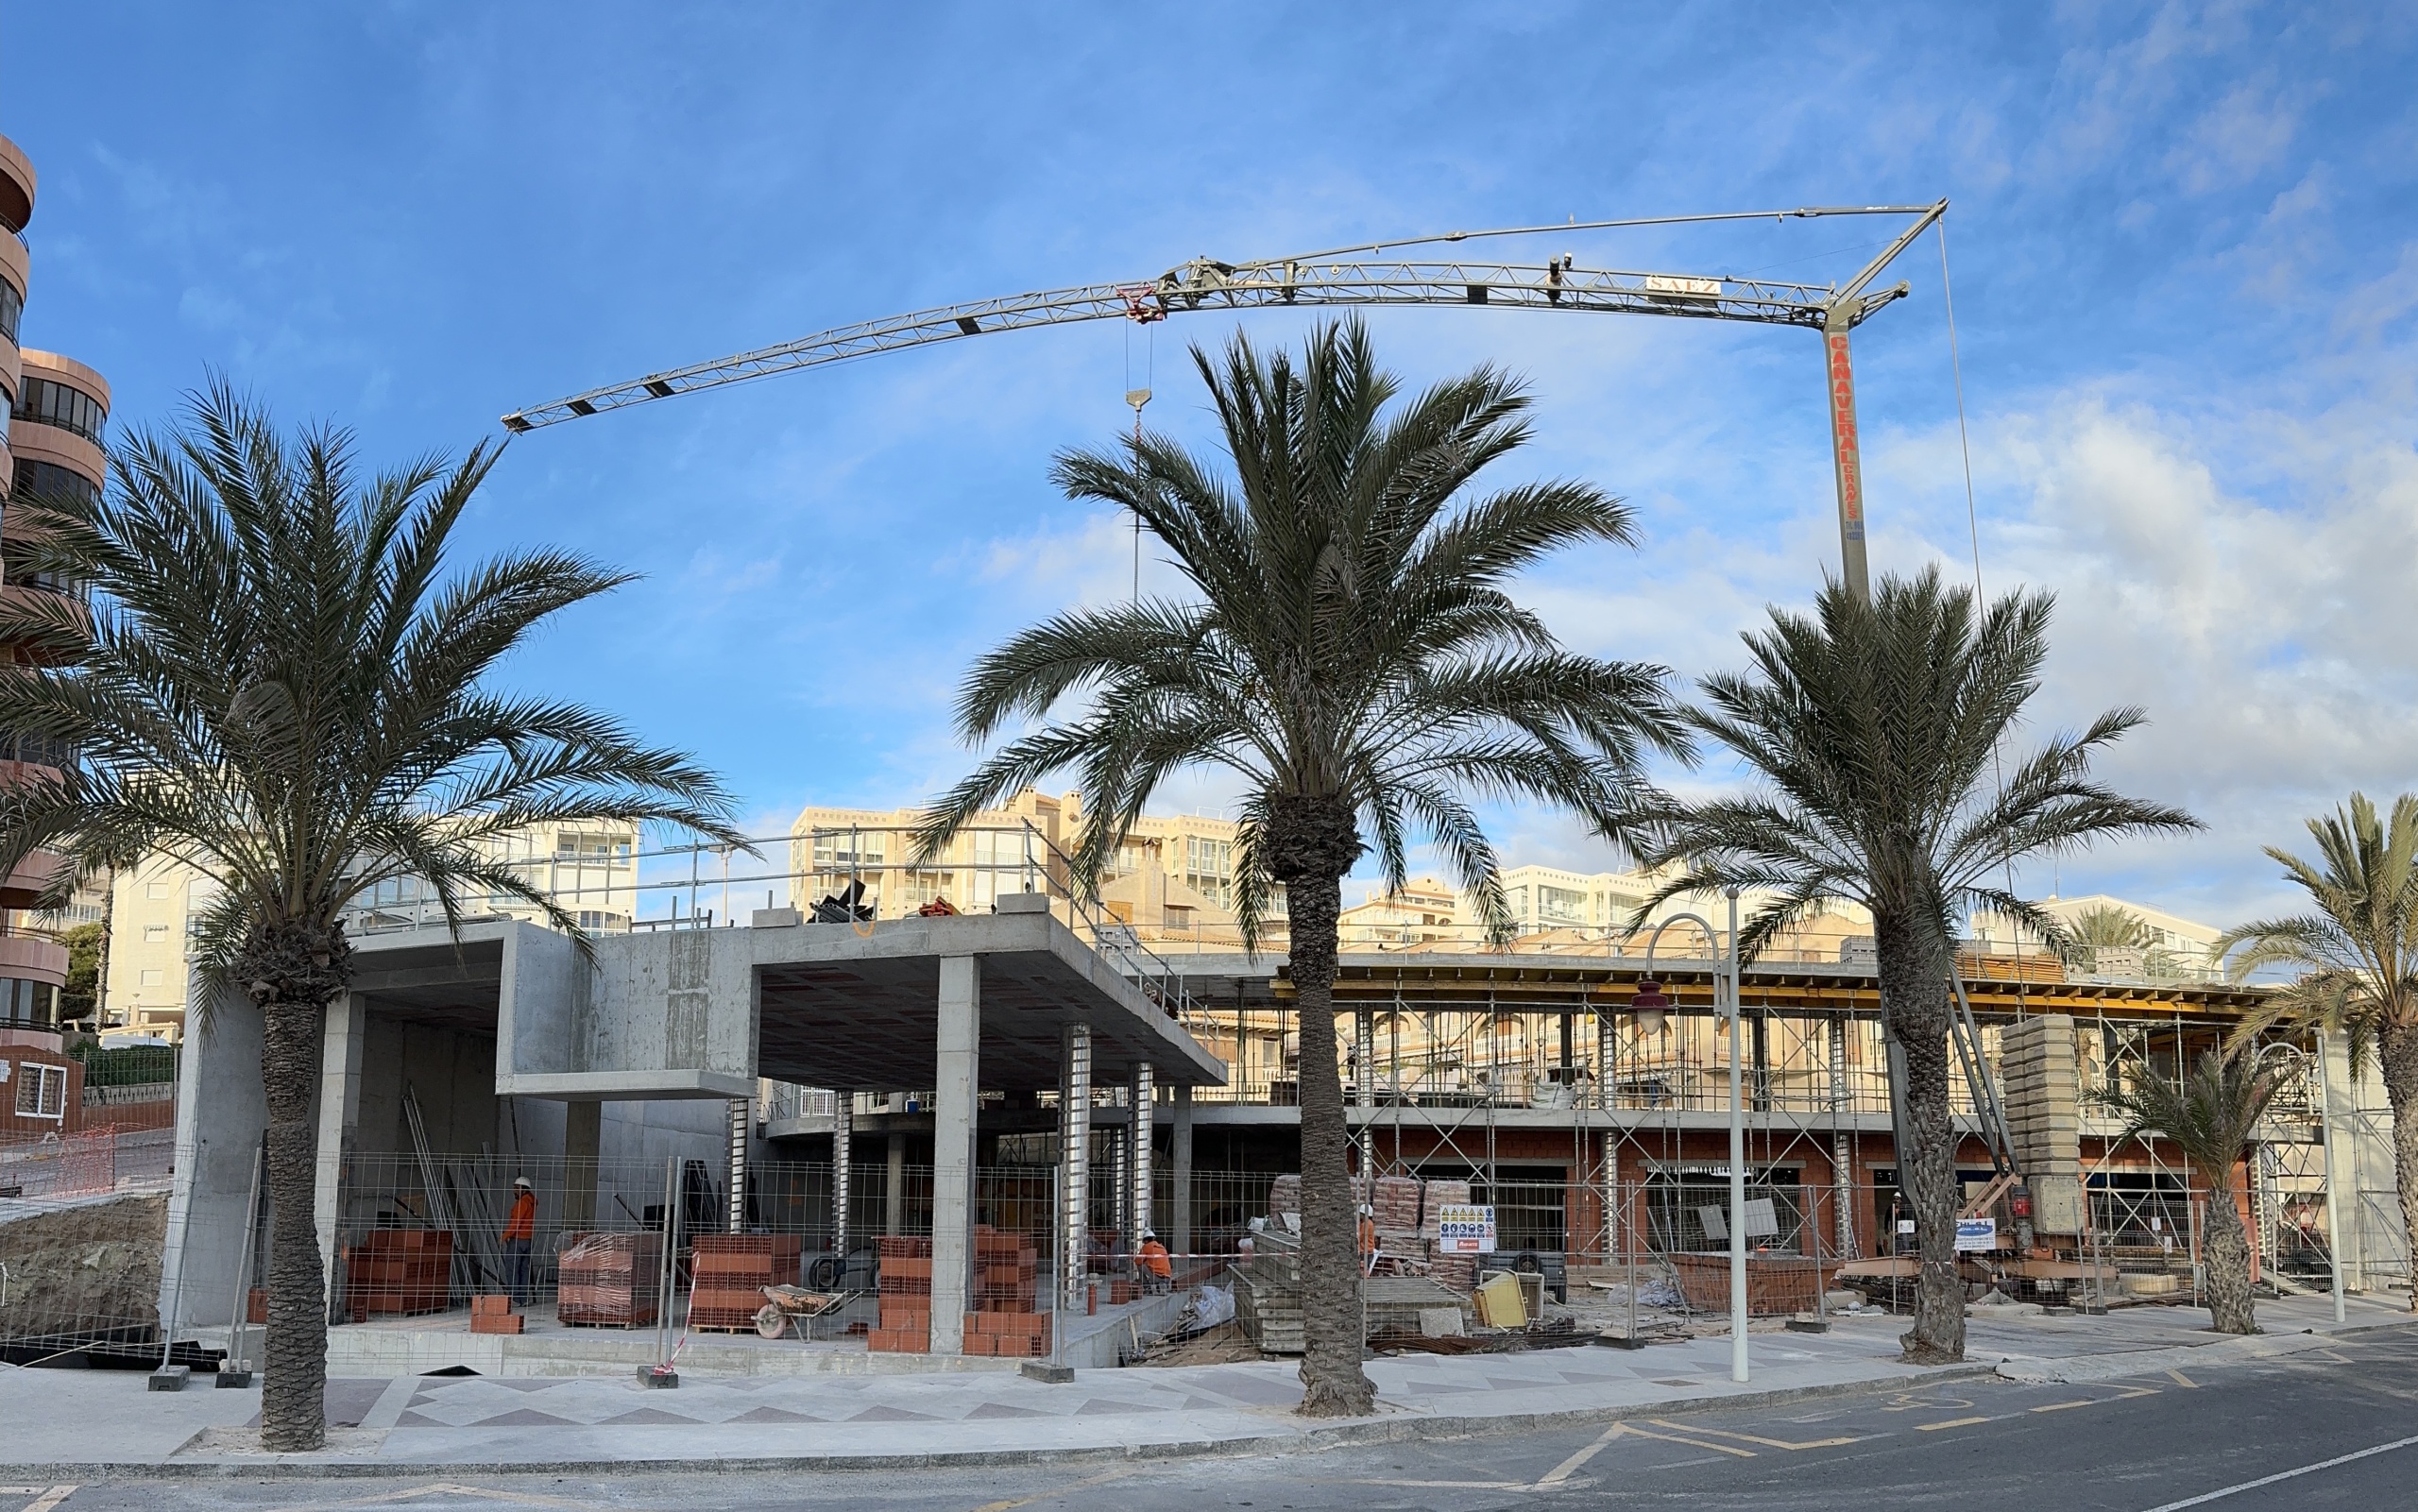 Avanzan a buen ritmo las obras de construcción del nuevo Centro Social de Arenales del Sol